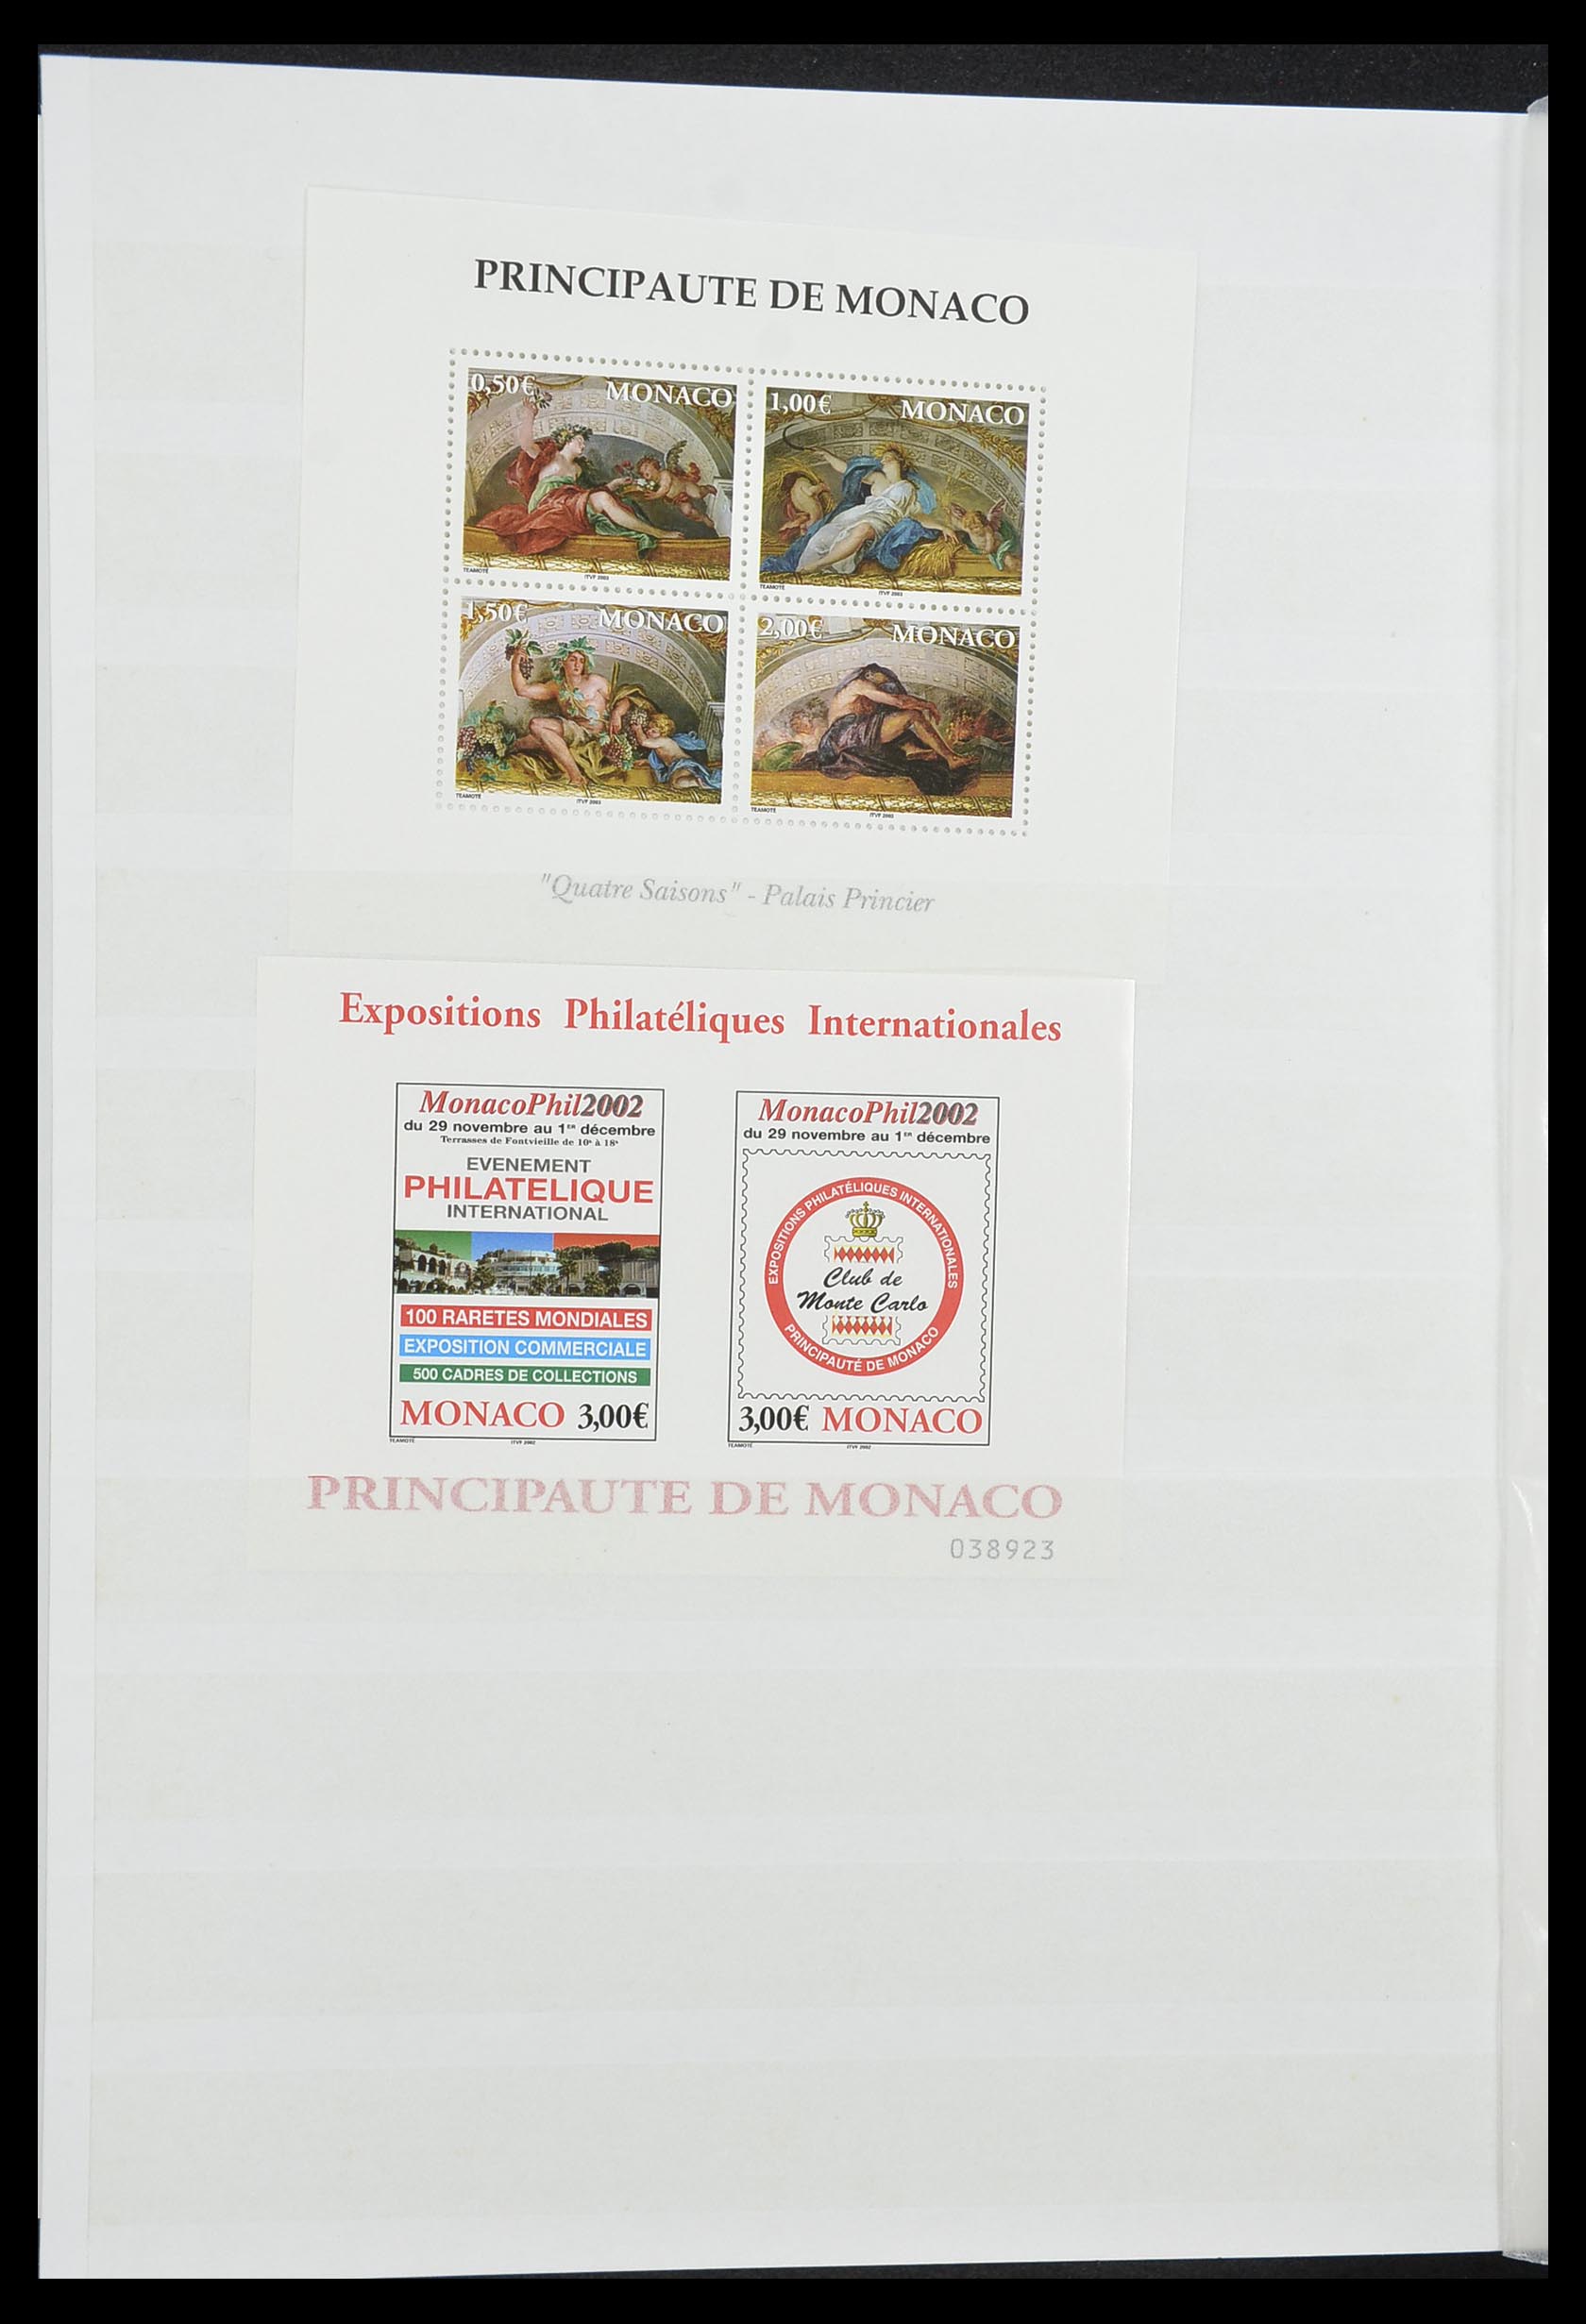 33833 040 - Stamp collection 33833 Monaco souvenir sheets 1979-2015.